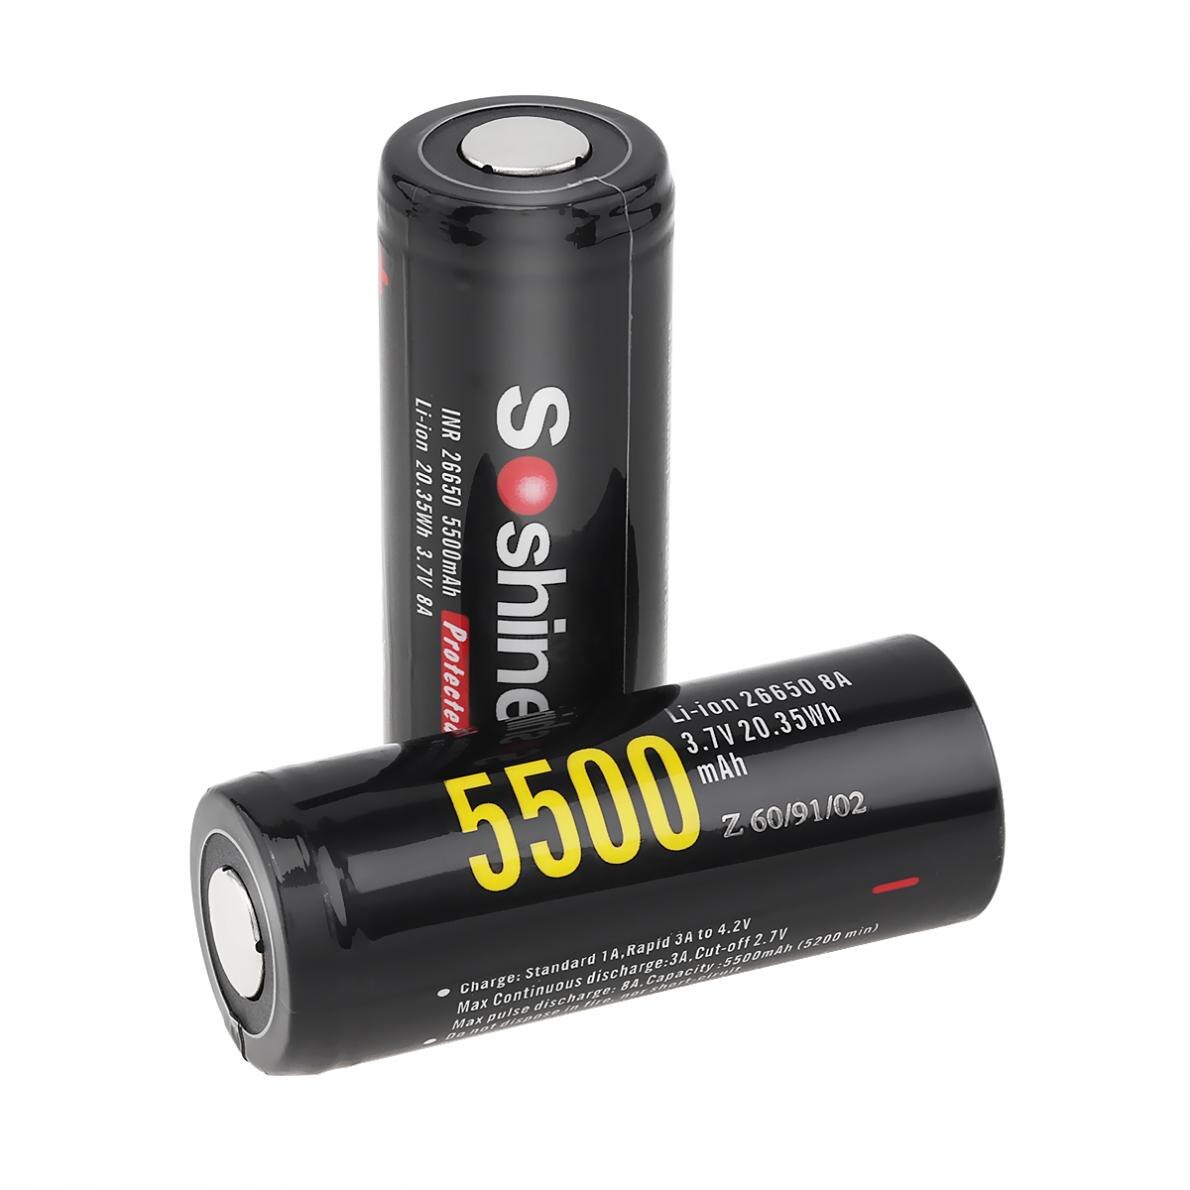 2 uds Soshine 3,7 V 5500mAh gran capacidad 26650 Li-ion batería recargable con PCB protegido para linternas/faros LED